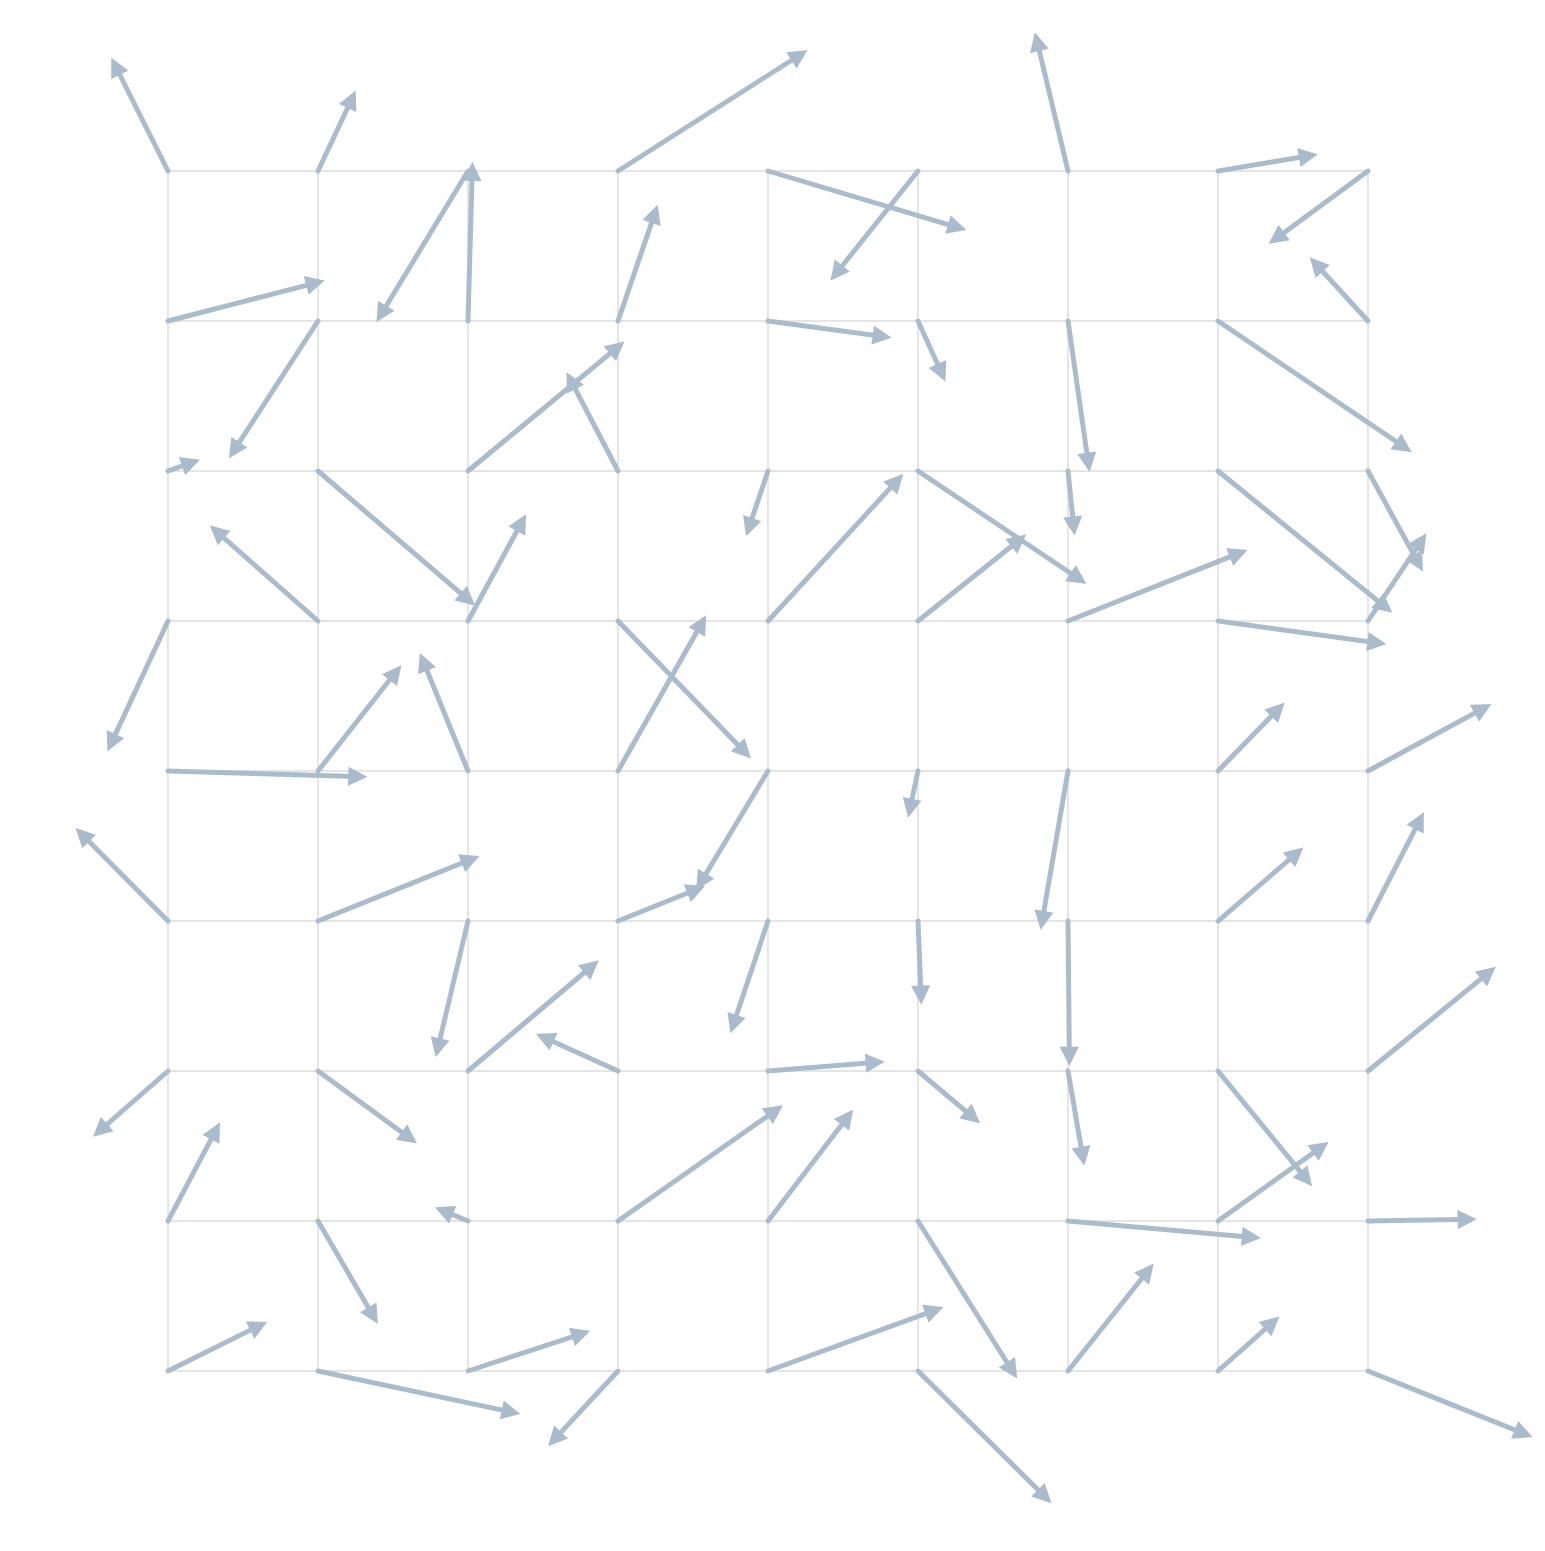 Randomly generated 2d vector field